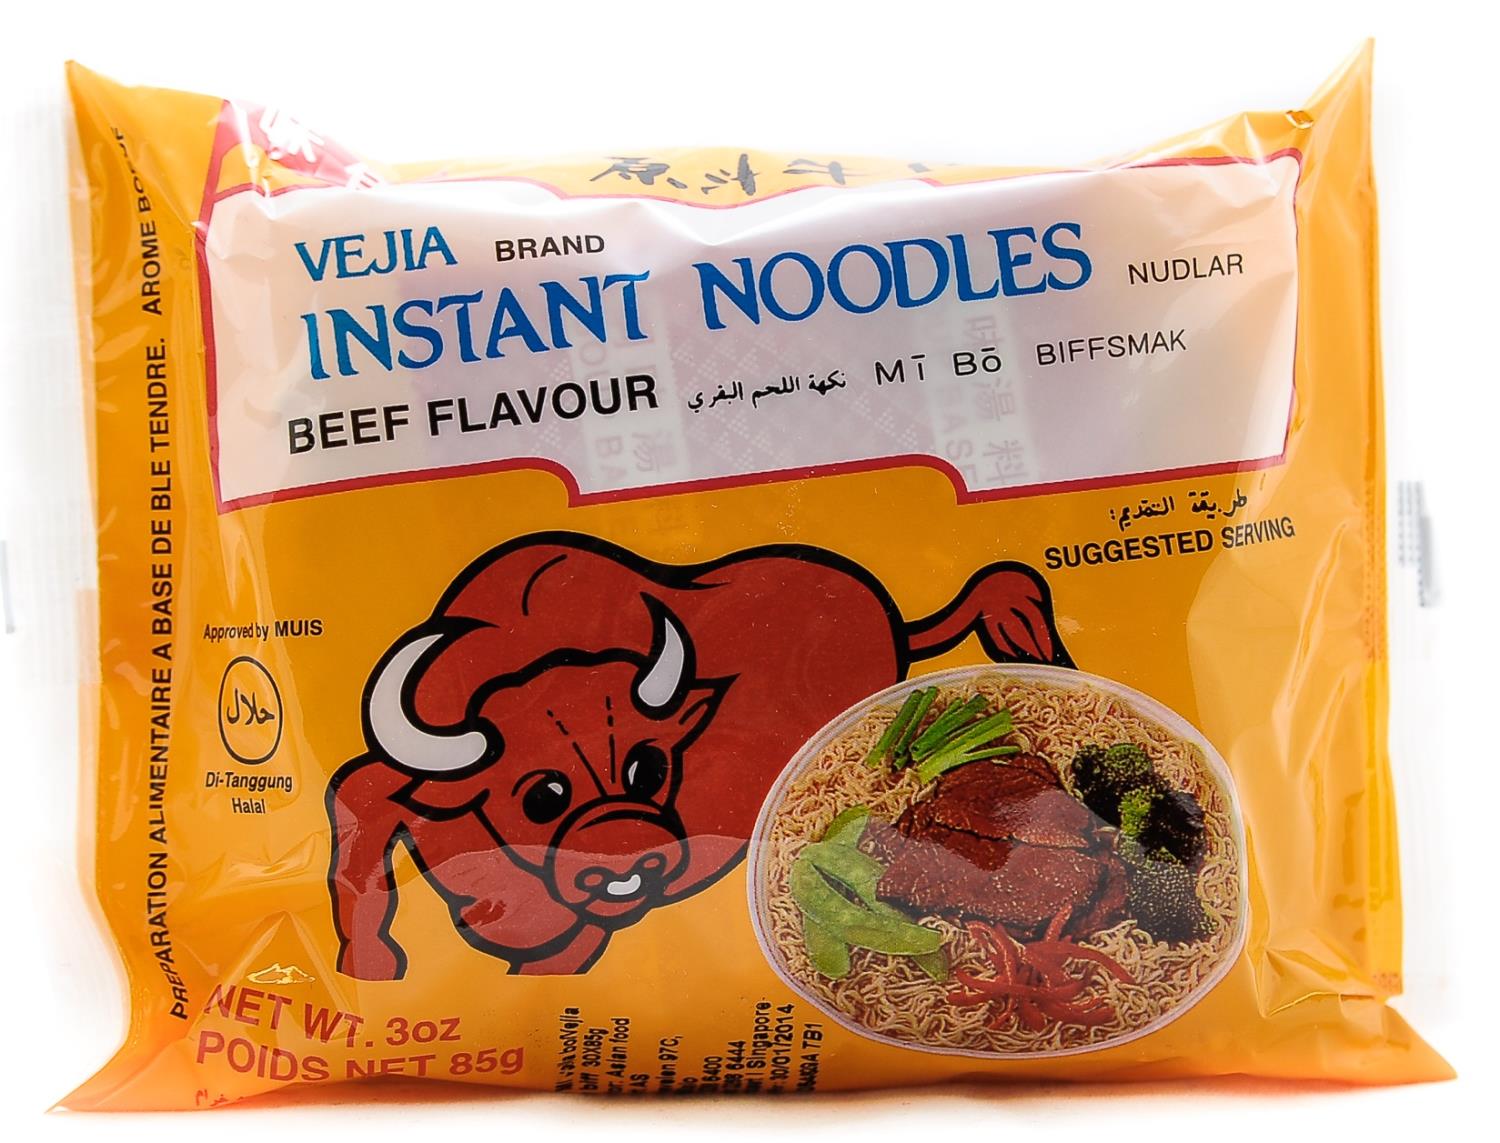 VEJIA inst noodles beef flv 85g SG